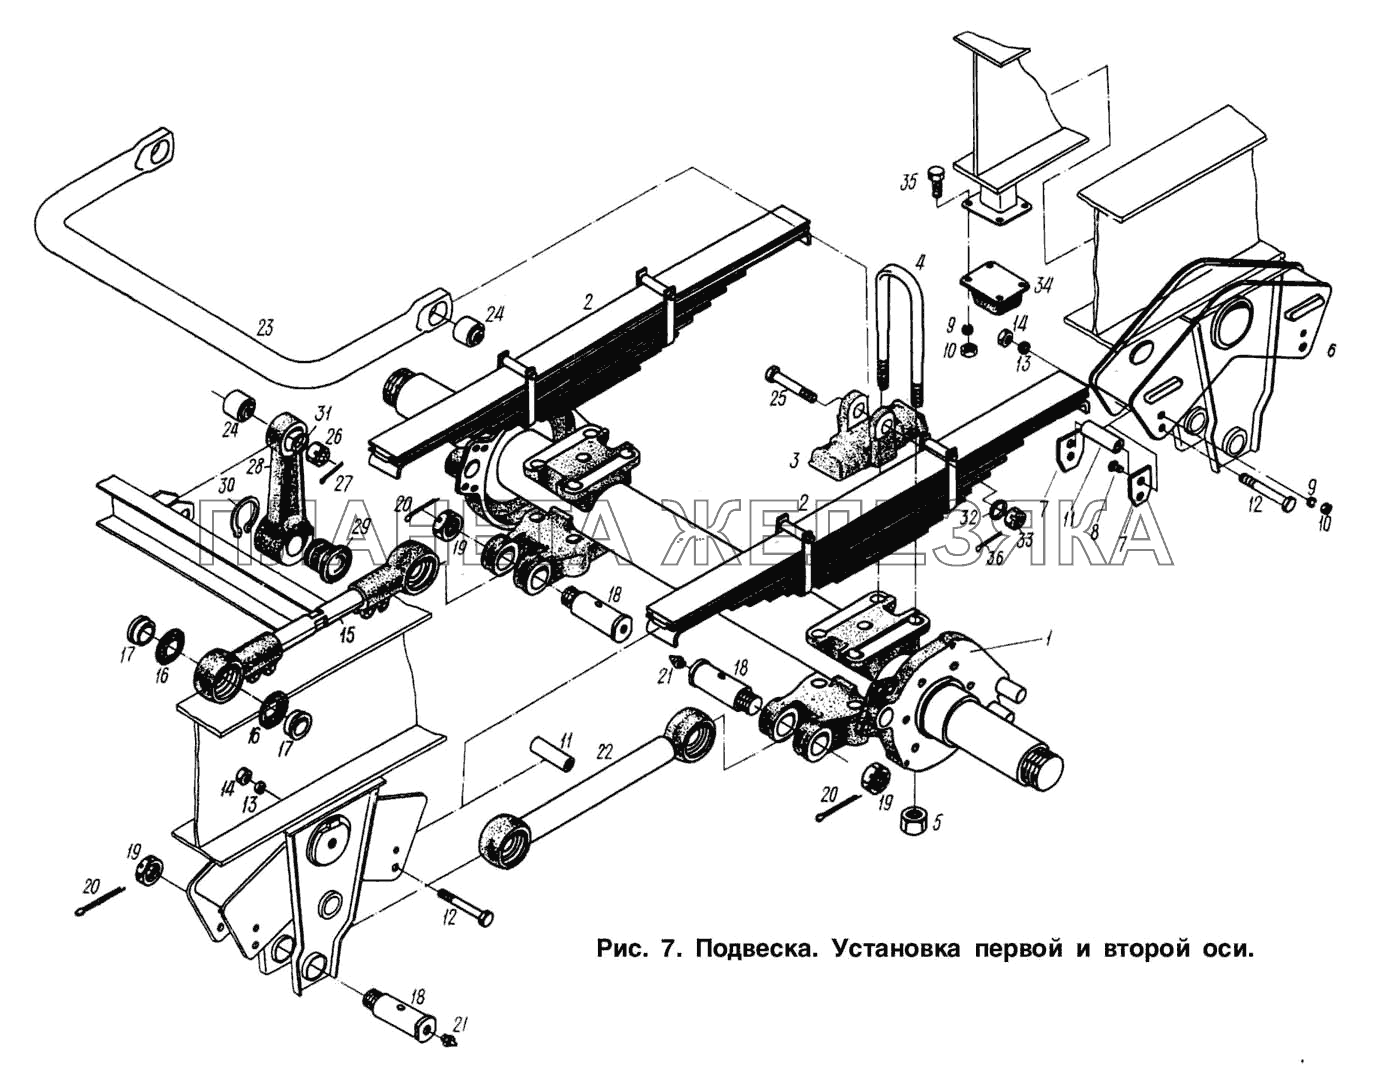 Подвеска. Установка первой и второй оси МАЗ-93892